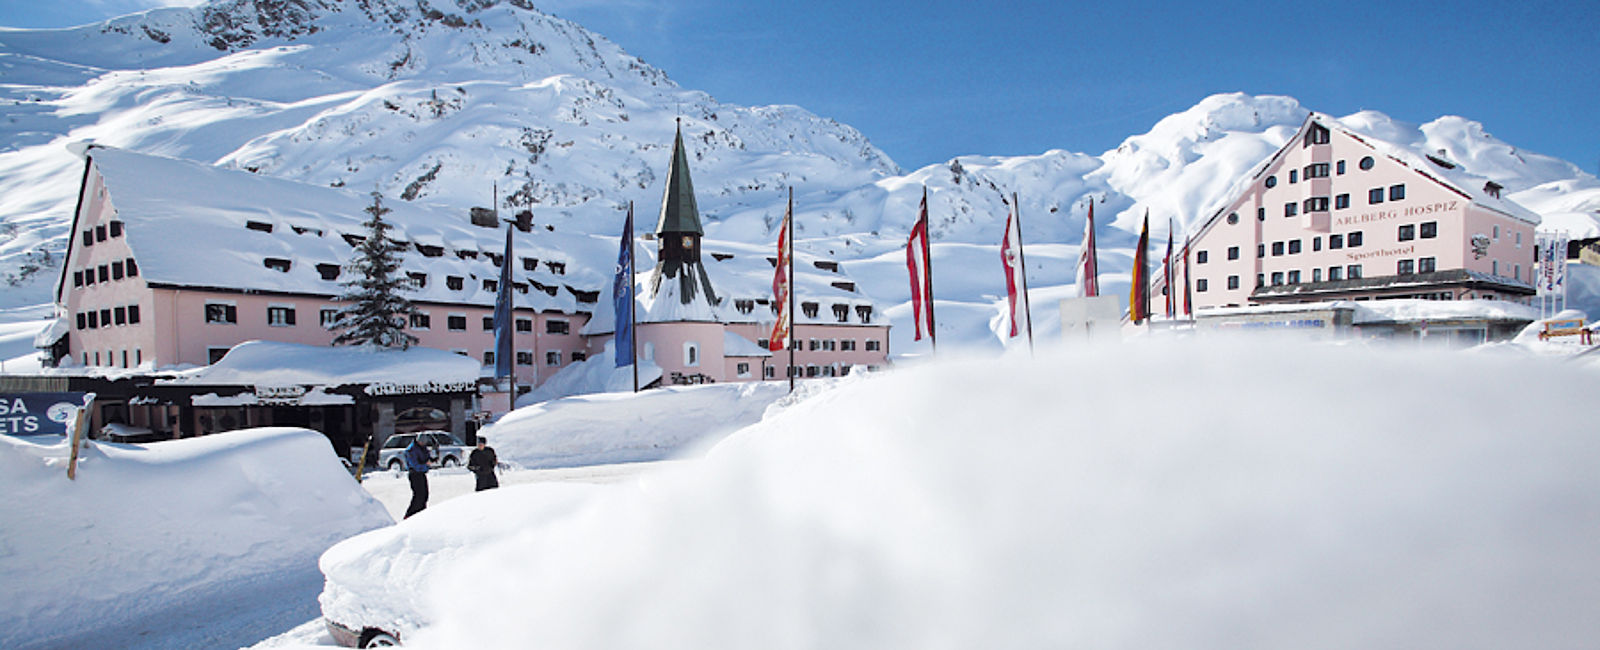 VERY SPECIAL HOTEL
 Arlberg Hospiz Hotel 
 Kunst in den Alpen 